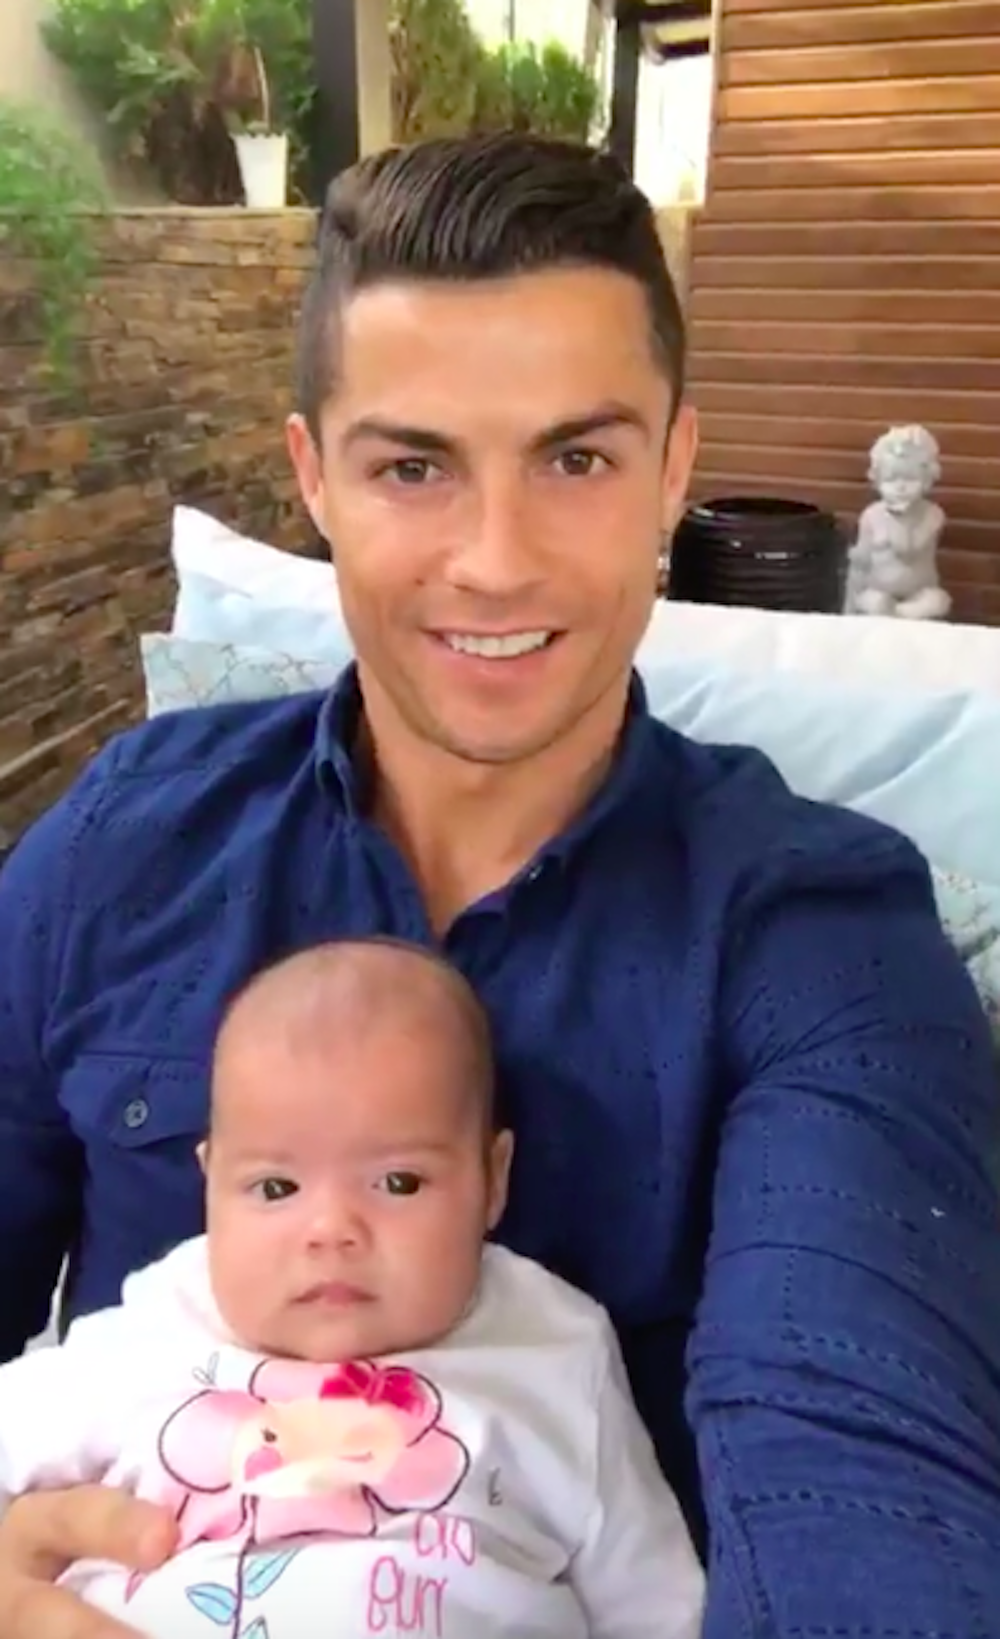 Cristiano Ronaldo presume de sus hijos: "Mi niña tiene los ojos como yo